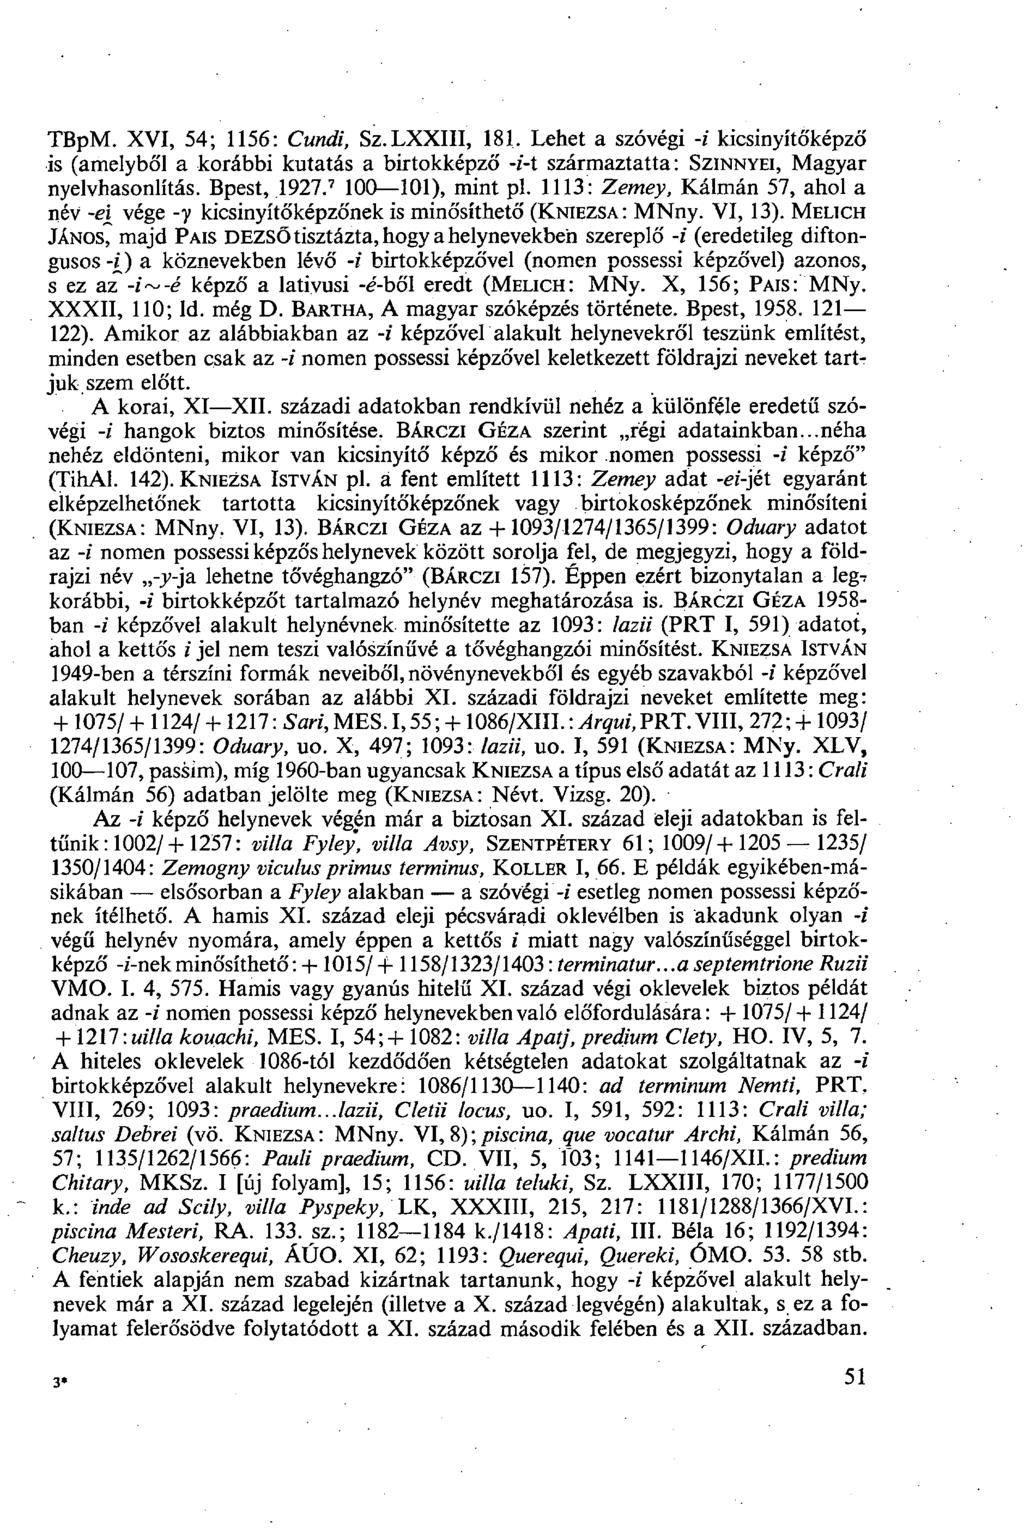 TBPM. XVI, 54; 1156: Cundi, Sz.LXXIII, 181. Lehet a szóvégi -i kicsinyítőképzó' is (amelyből a korábbi kutatás a birtokképző -i-t származtatta: SZINNYEI, Magyar nyelvhasonlítás. Bpest, 1927.